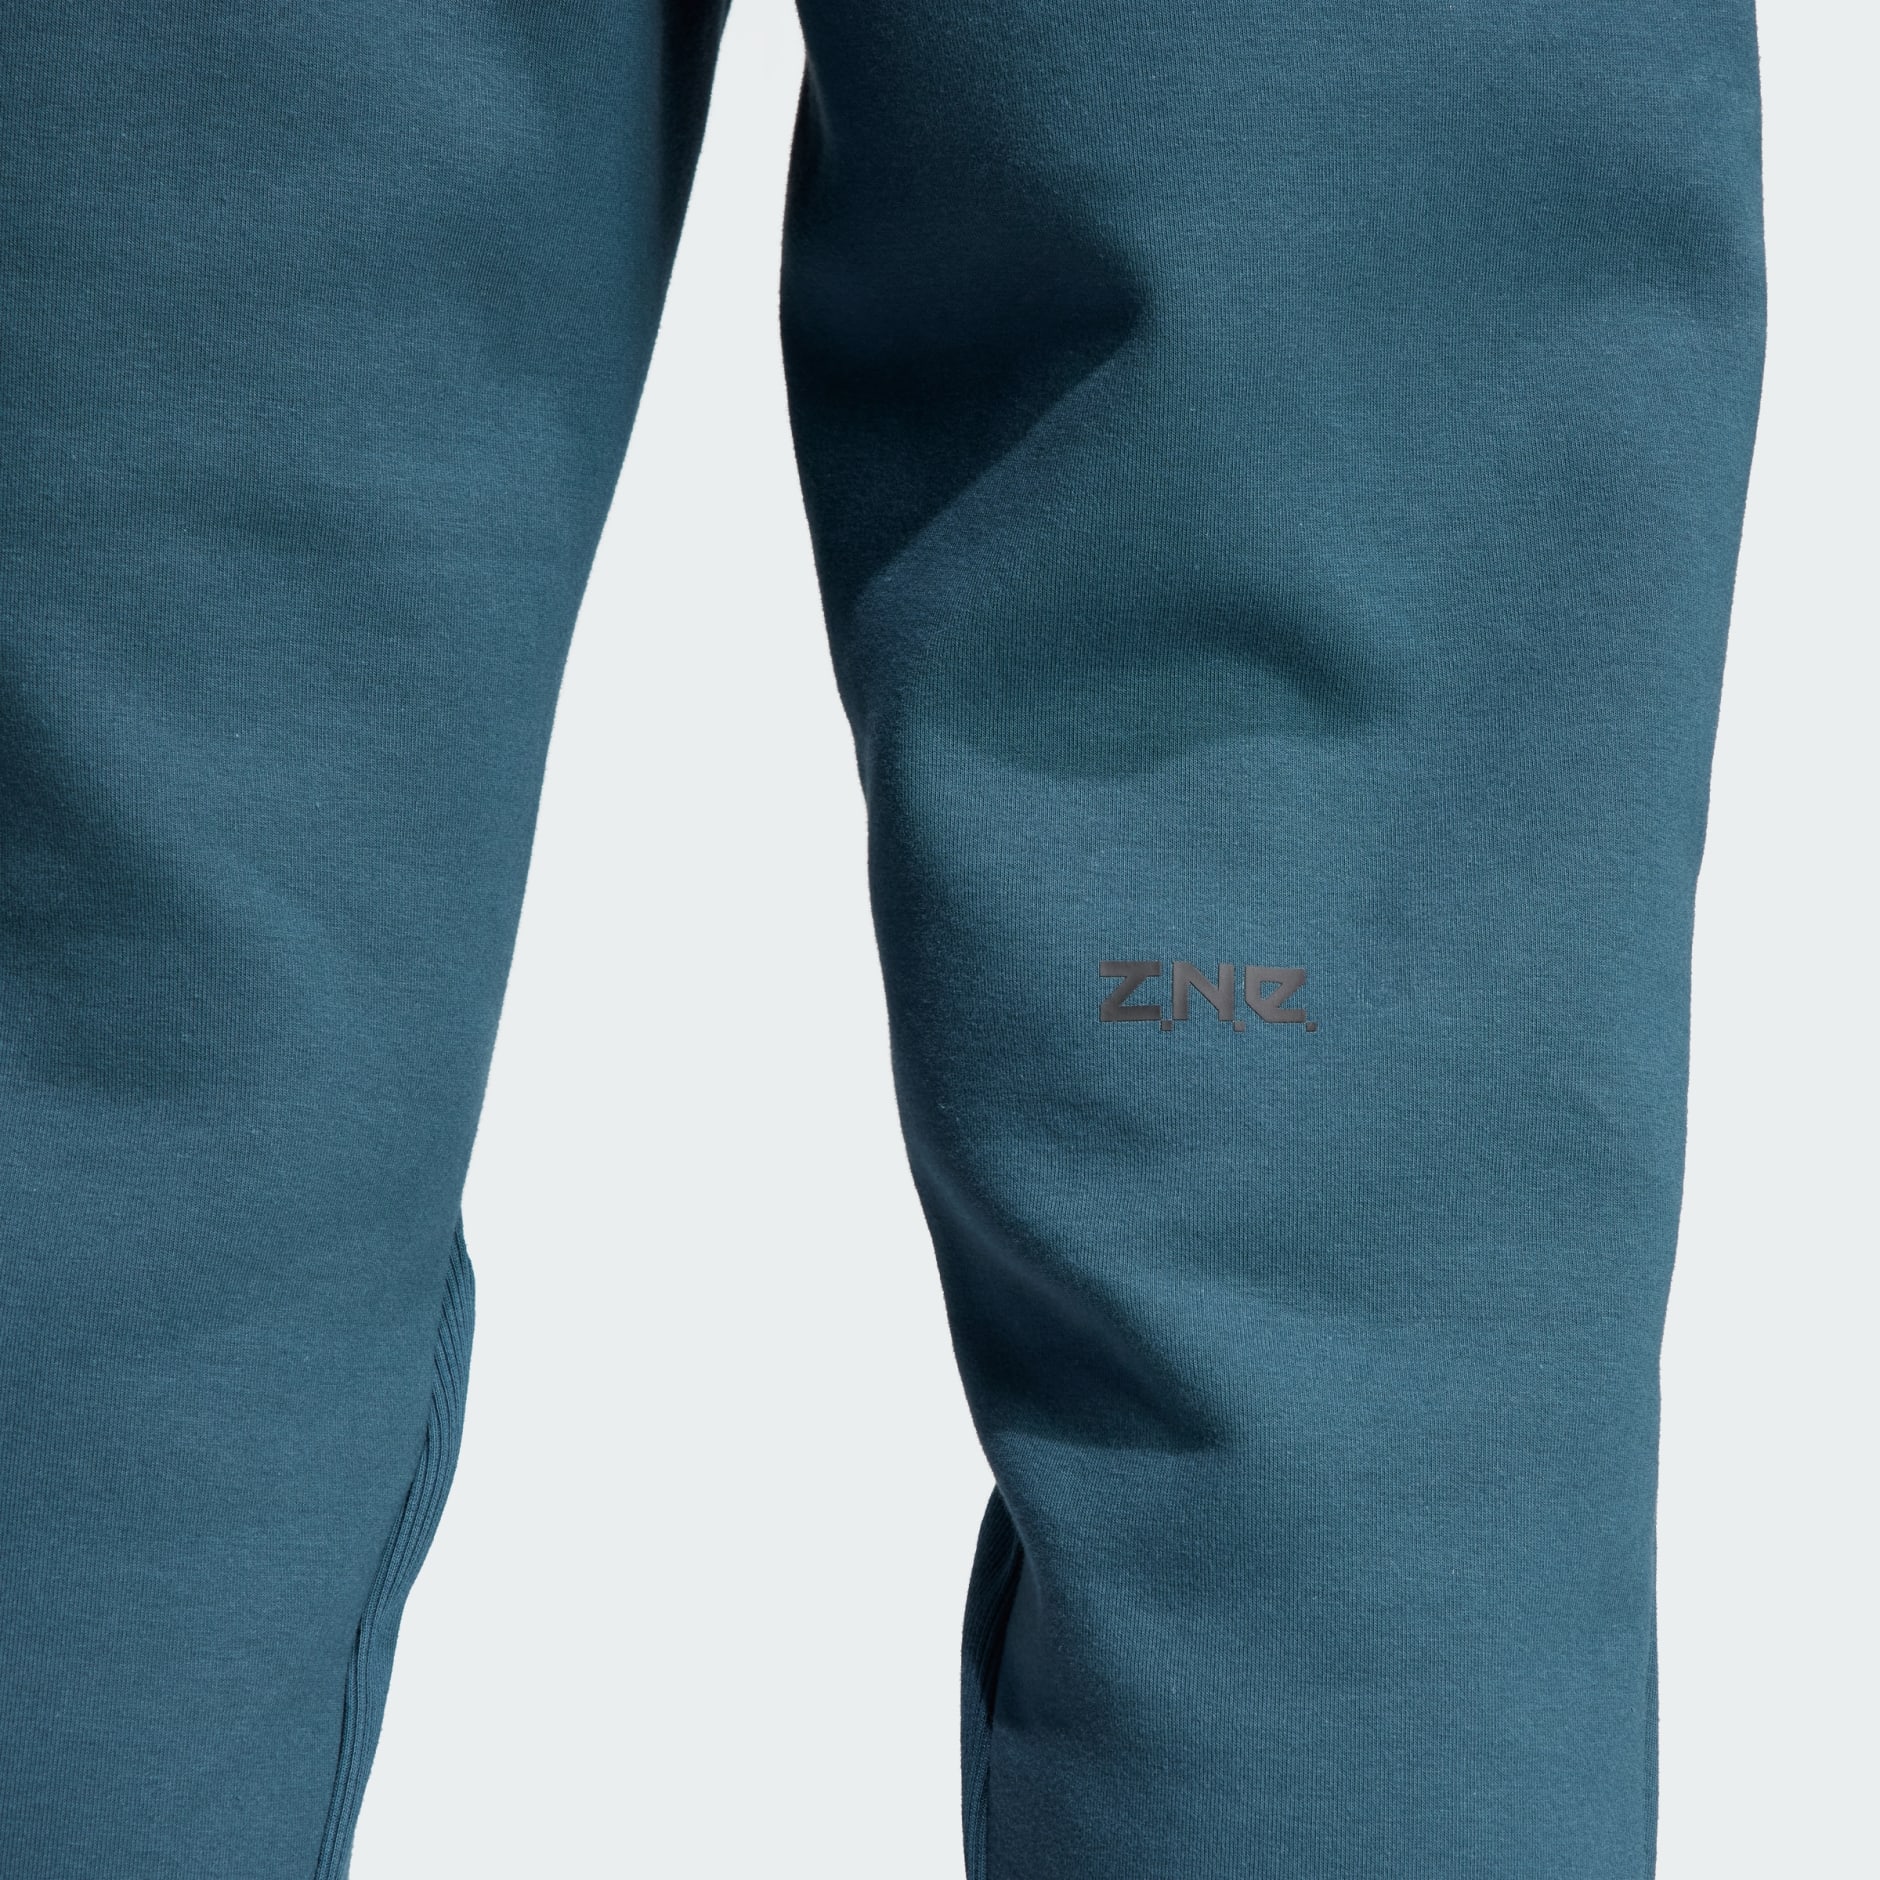 adidas Z.N.E. Leggings (Plus Size) - Turquoise